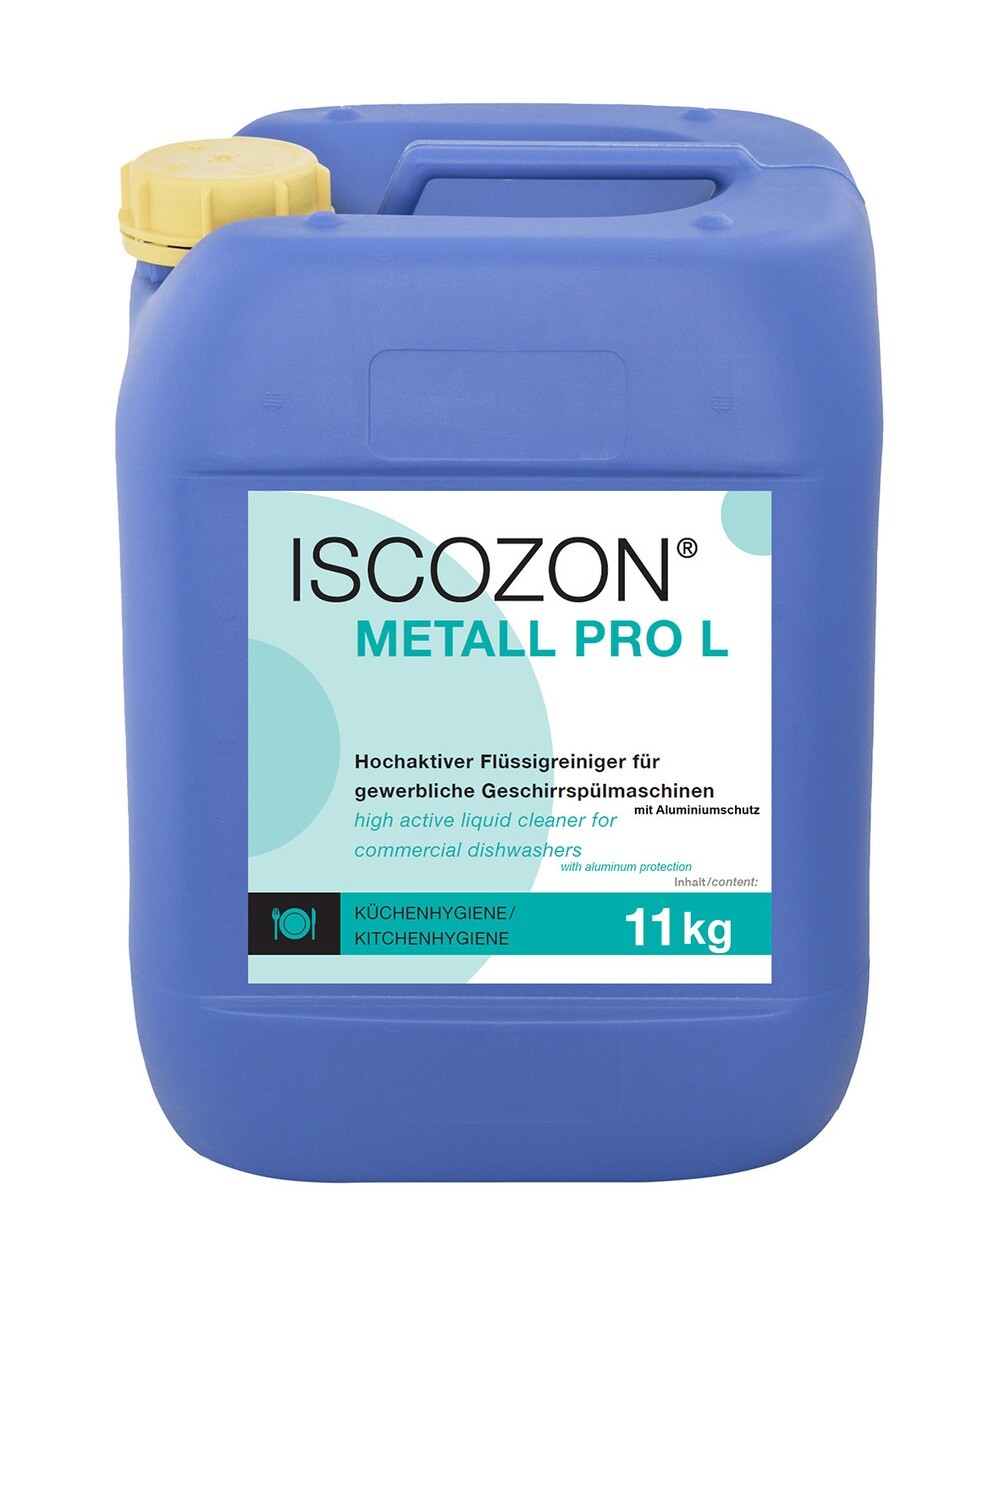 ISCOZON metall pro L
Spezialreiniger für alle gewerblichen Geschirrspülmaschinen